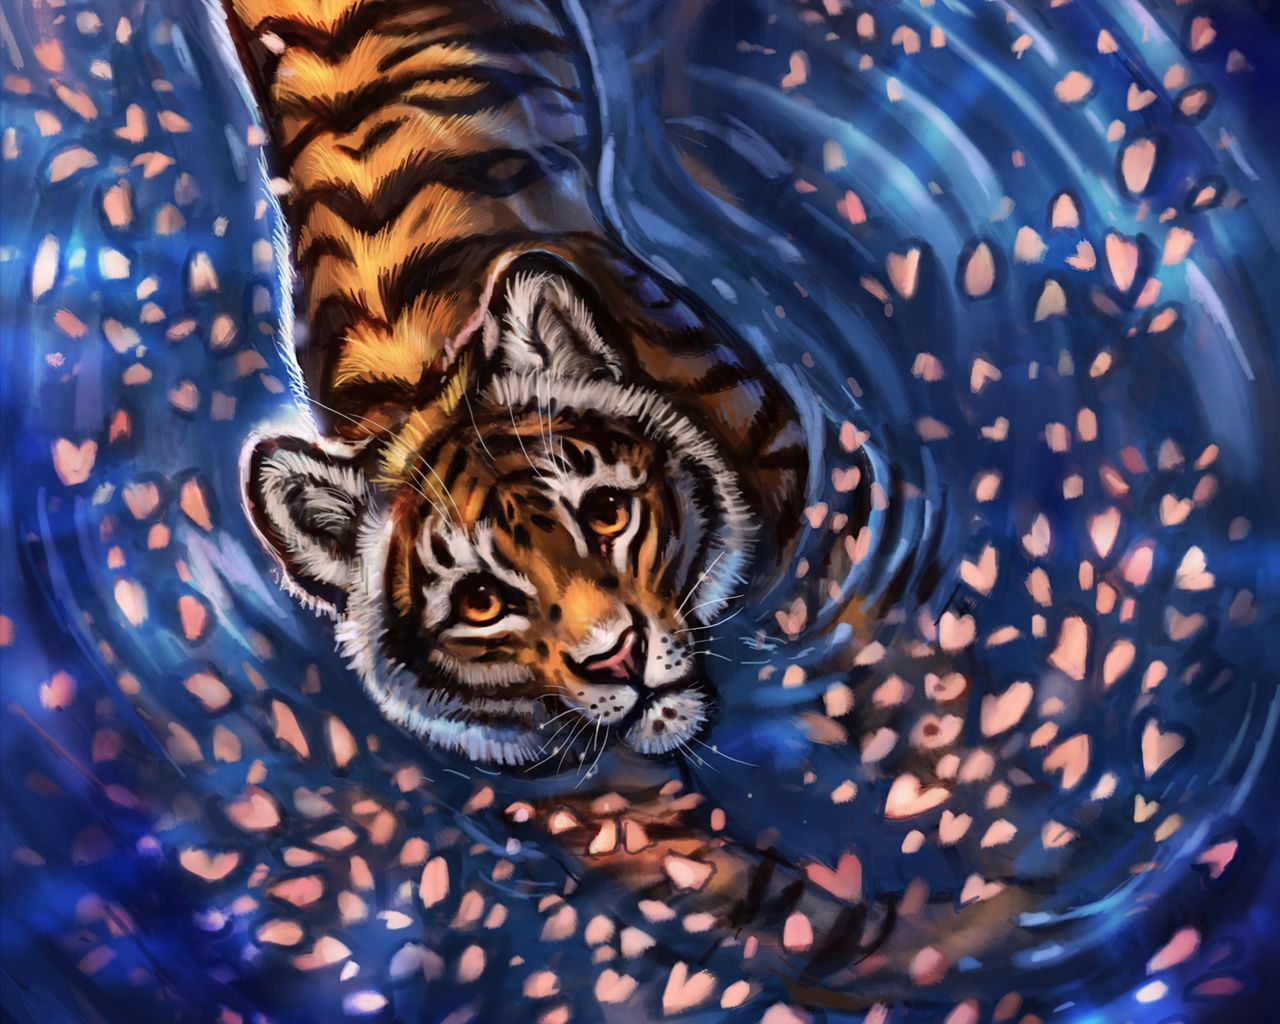 Khám phá bức ảnh tiger cub art wallpaper đầy bản sắc nghệ thuật. Mèo hổ con được vẽ với đường nét tinh xảo và chuyên nghiệp, tạo nên một hình ảnh đầy sức sống và cổ điển. Bức ảnh này sẽ làm hài lòng cả những người khó tính nhất cũng như những người yêu nghệ thuật.